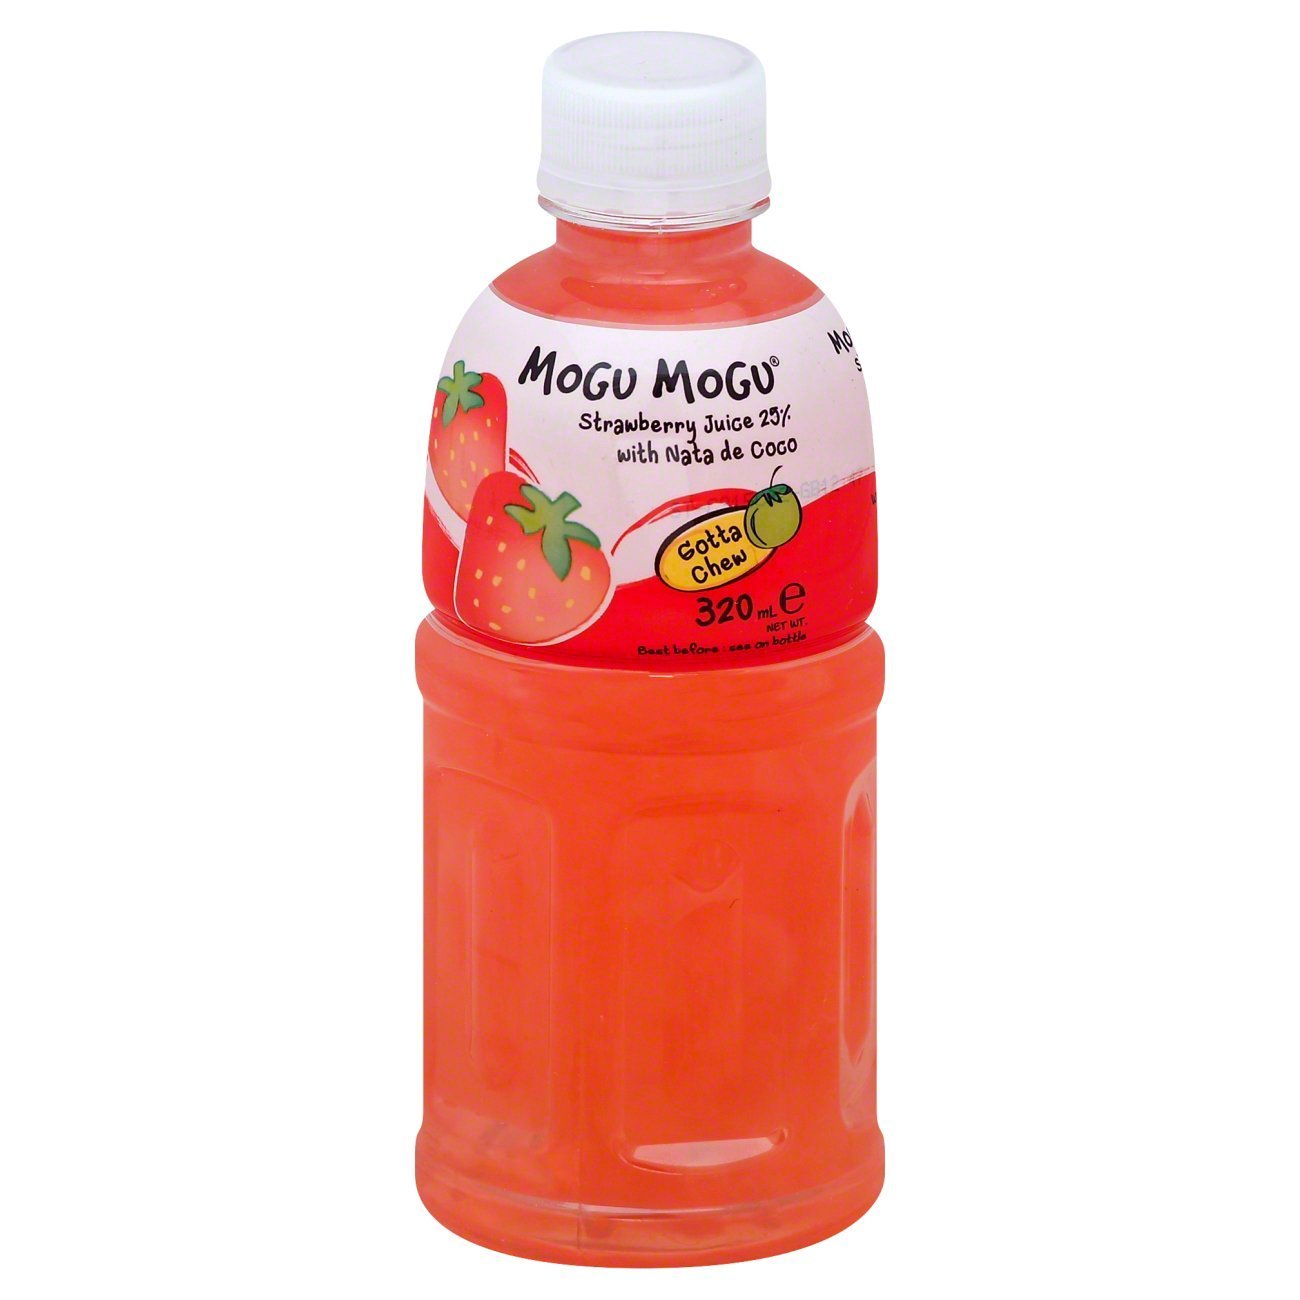 Mogu Mogu Strawberry Flavored Drink with Nata De coco